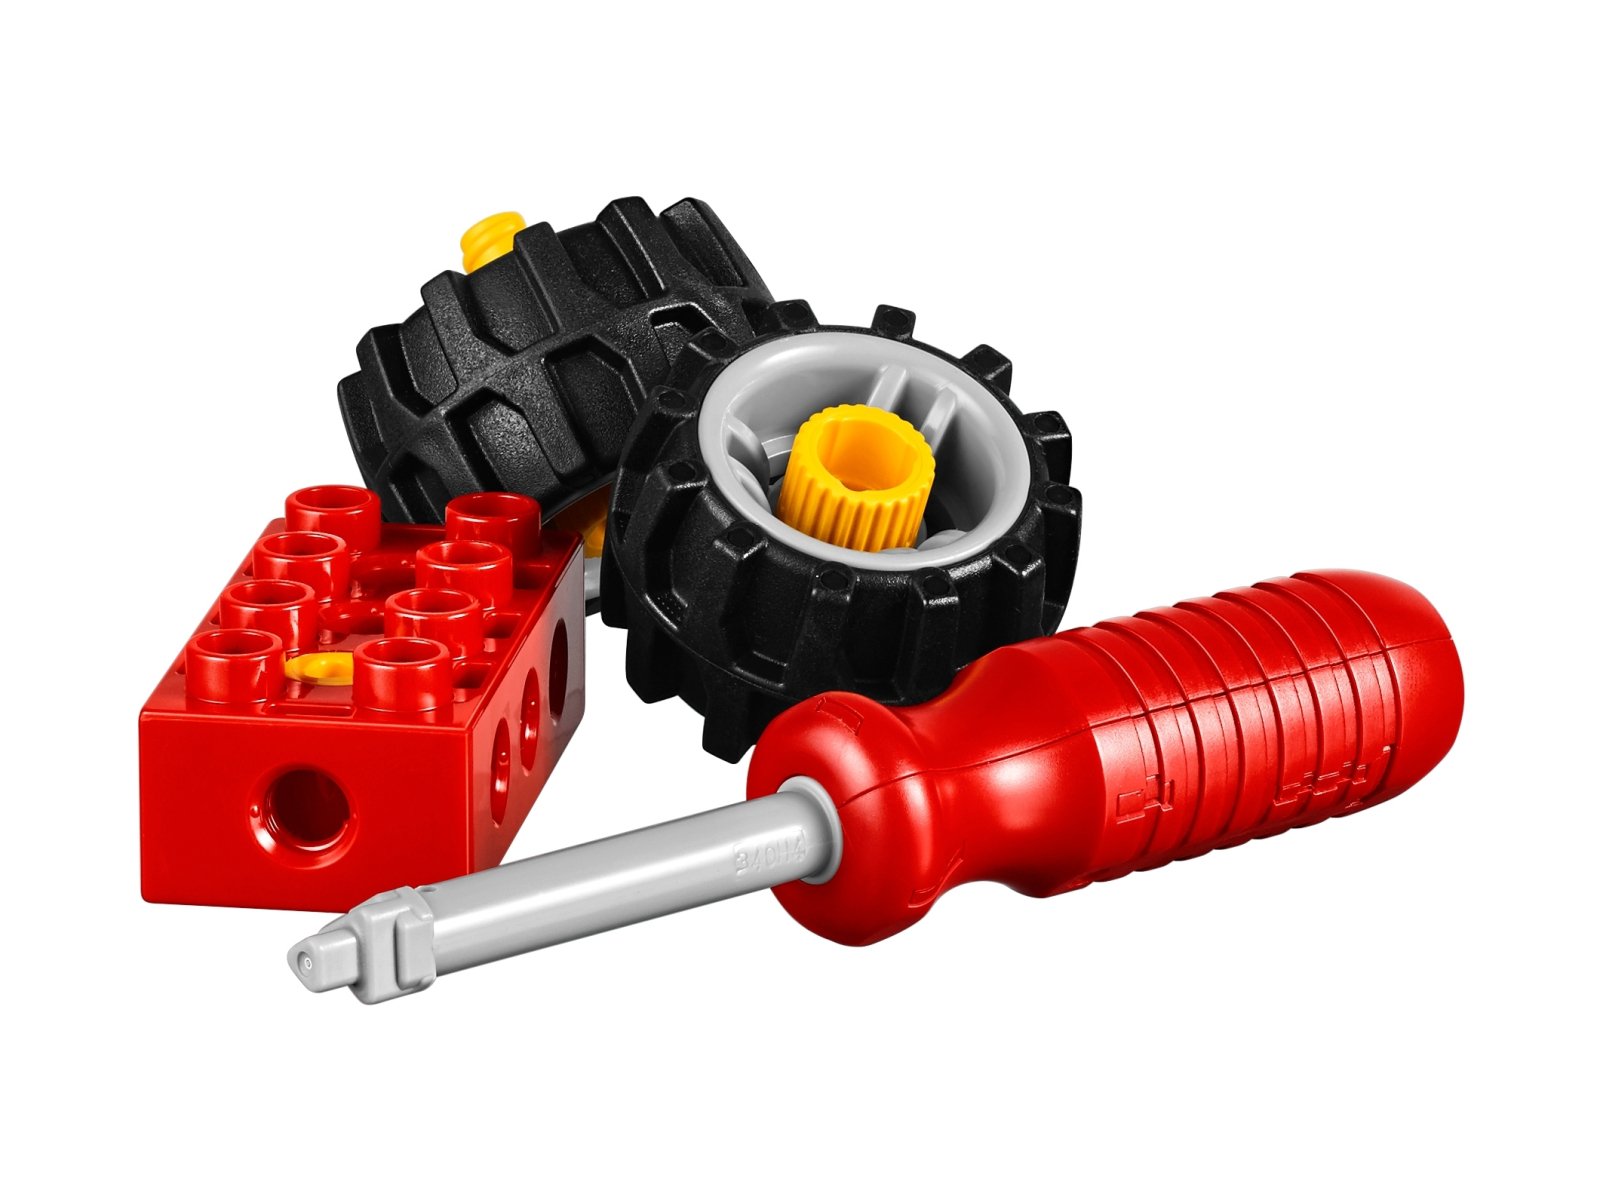 LEGO 45002 Zaawansowane maszyny